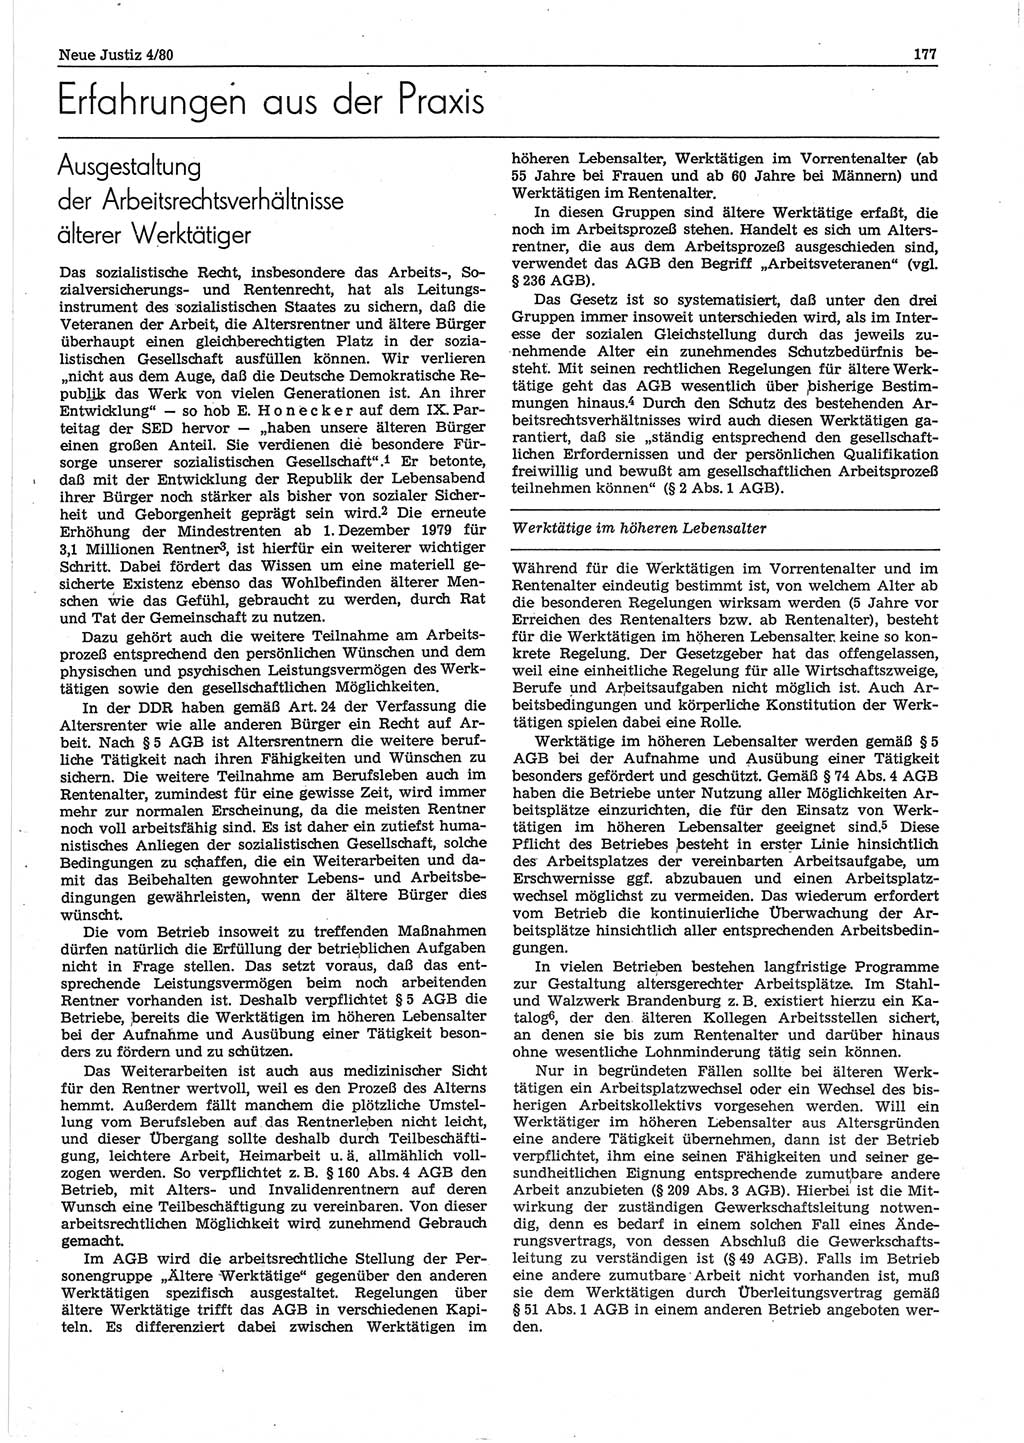 Neue Justiz (NJ), Zeitschrift für sozialistisches Recht und Gesetzlichkeit [Deutsche Demokratische Republik (DDR)], 34. Jahrgang 1980, Seite 177 (NJ DDR 1980, S. 177)